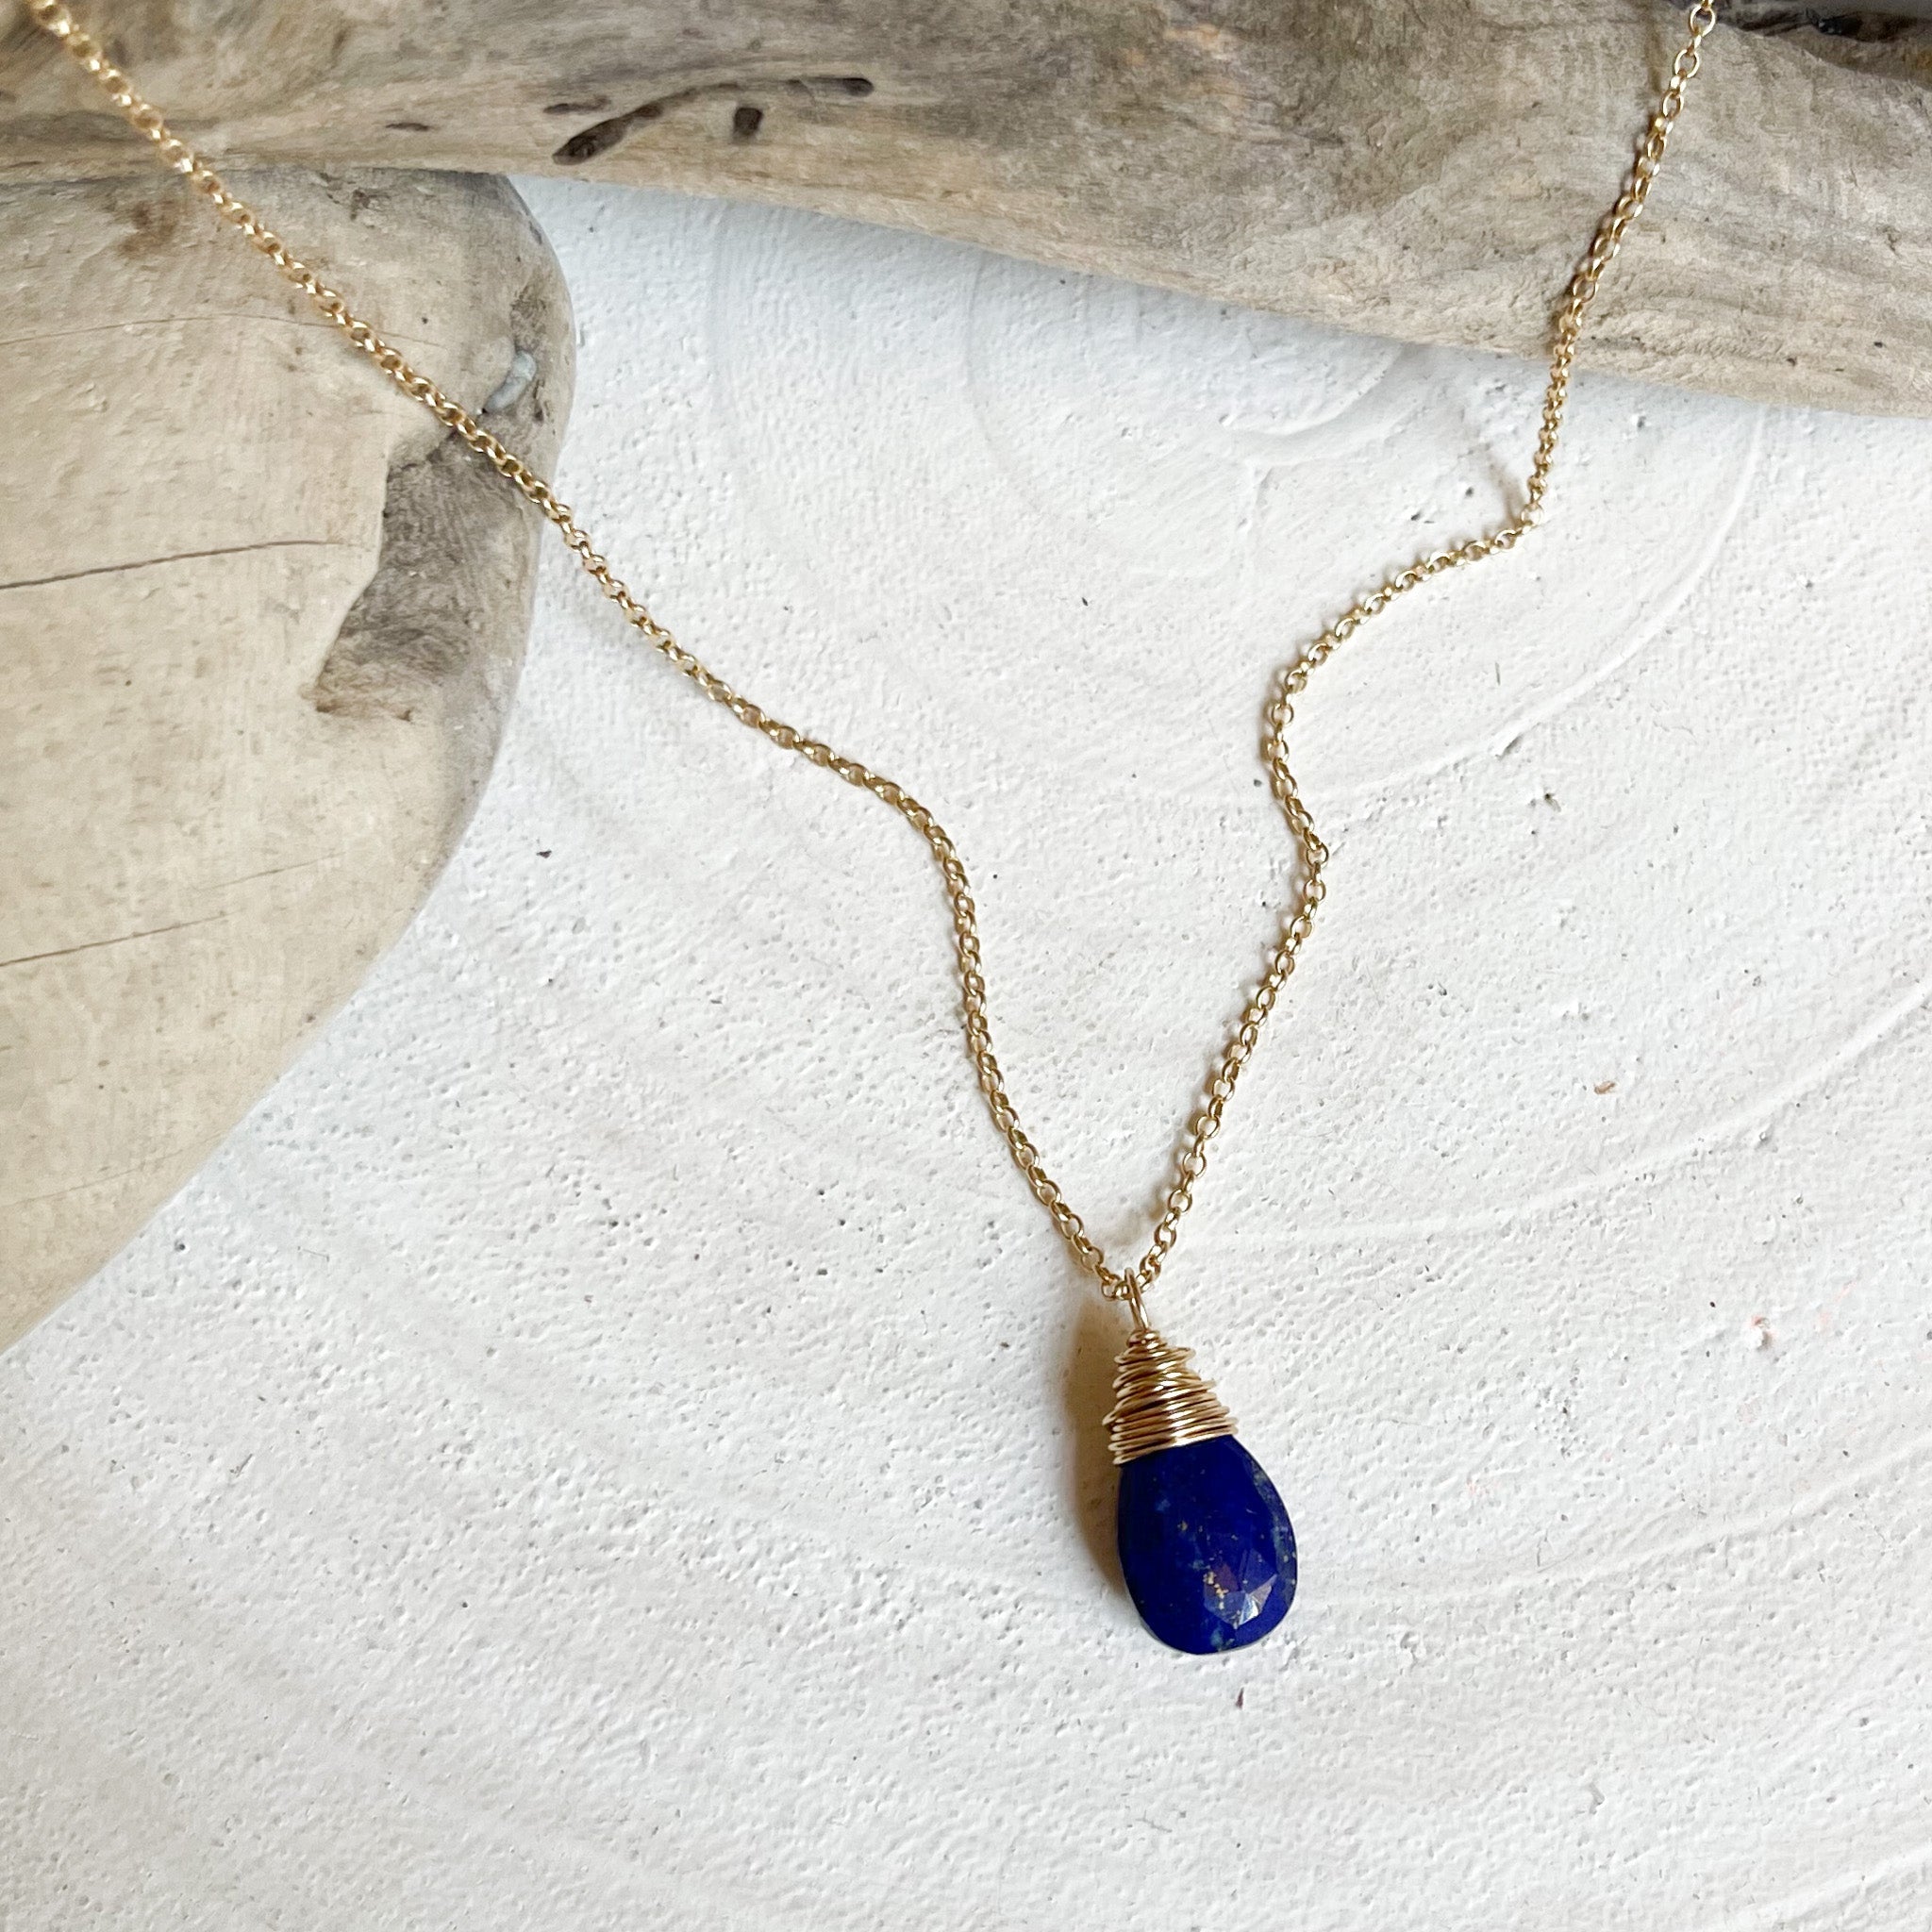 Lapis Lazuli Jewelry, Dainty Lapis Necklace, Minimalist Necklace